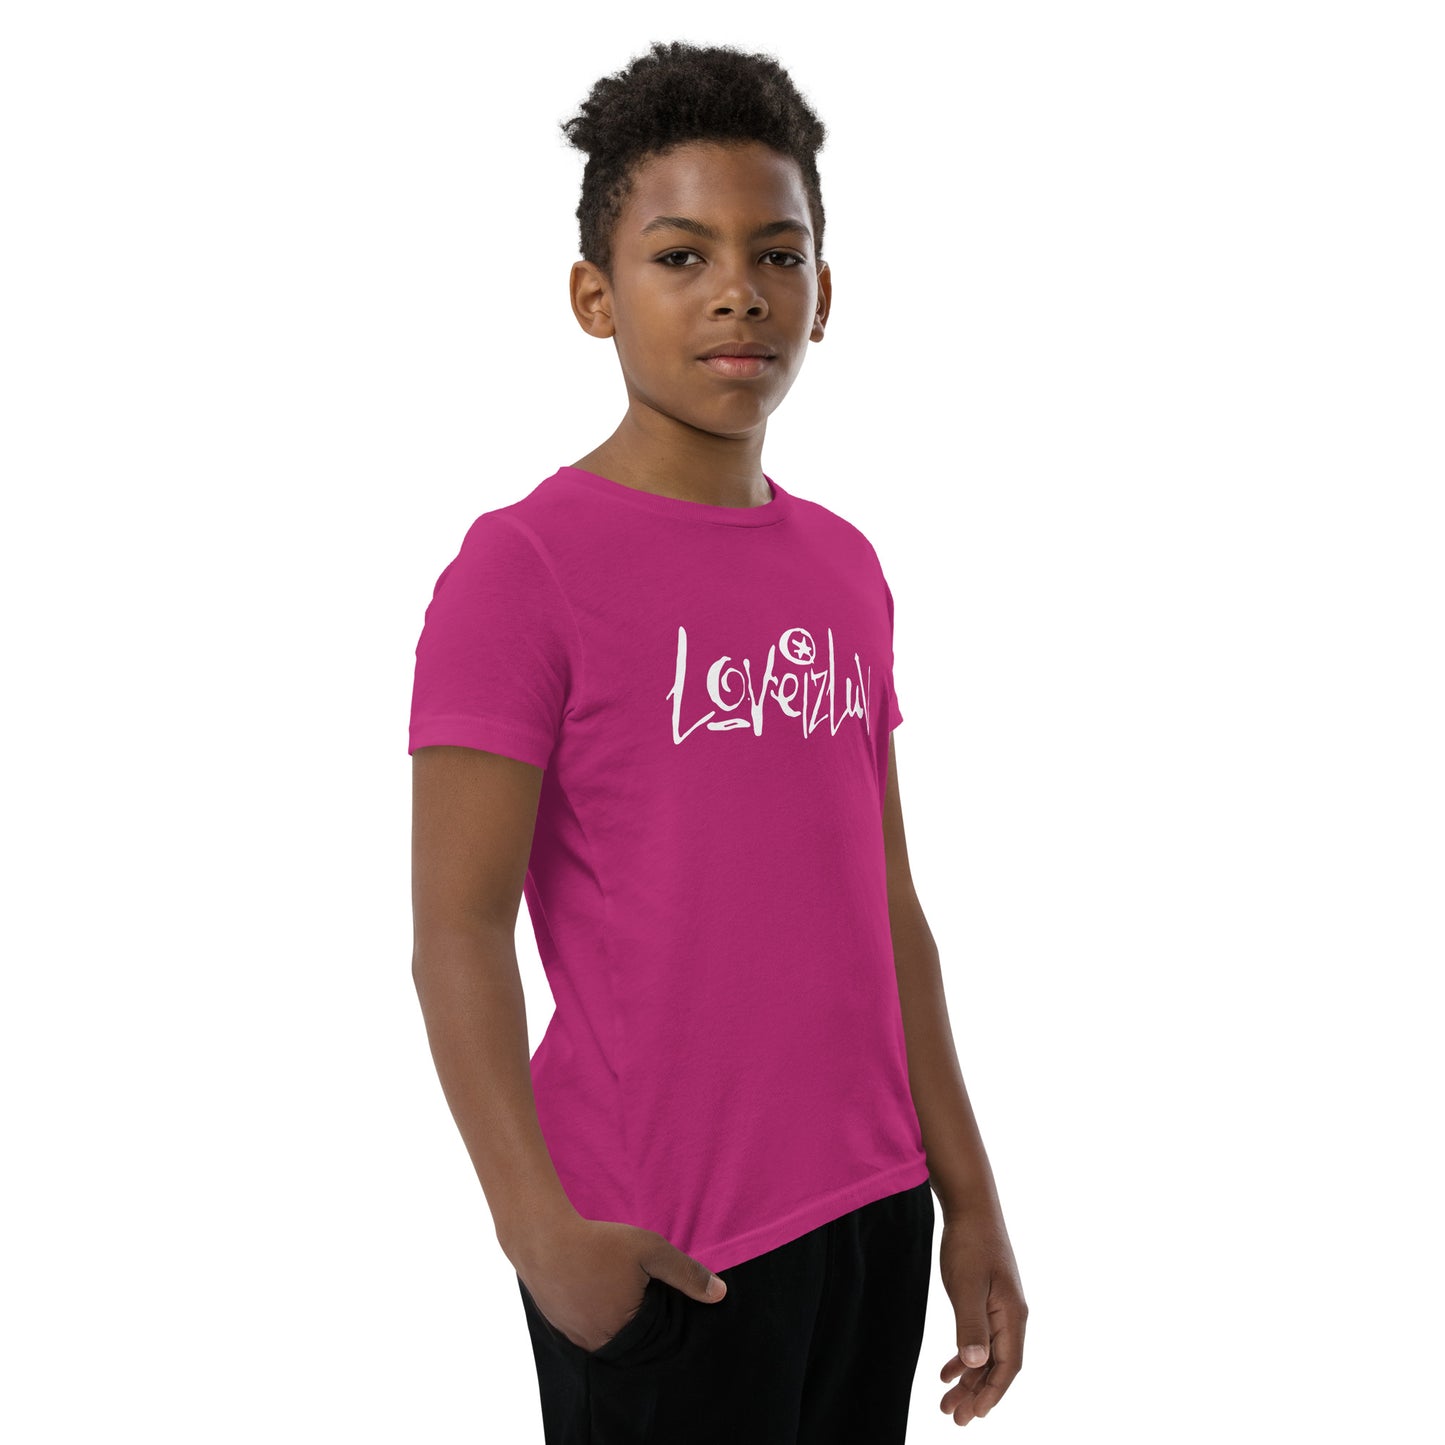 LoveizLuv Youth T-Shirt